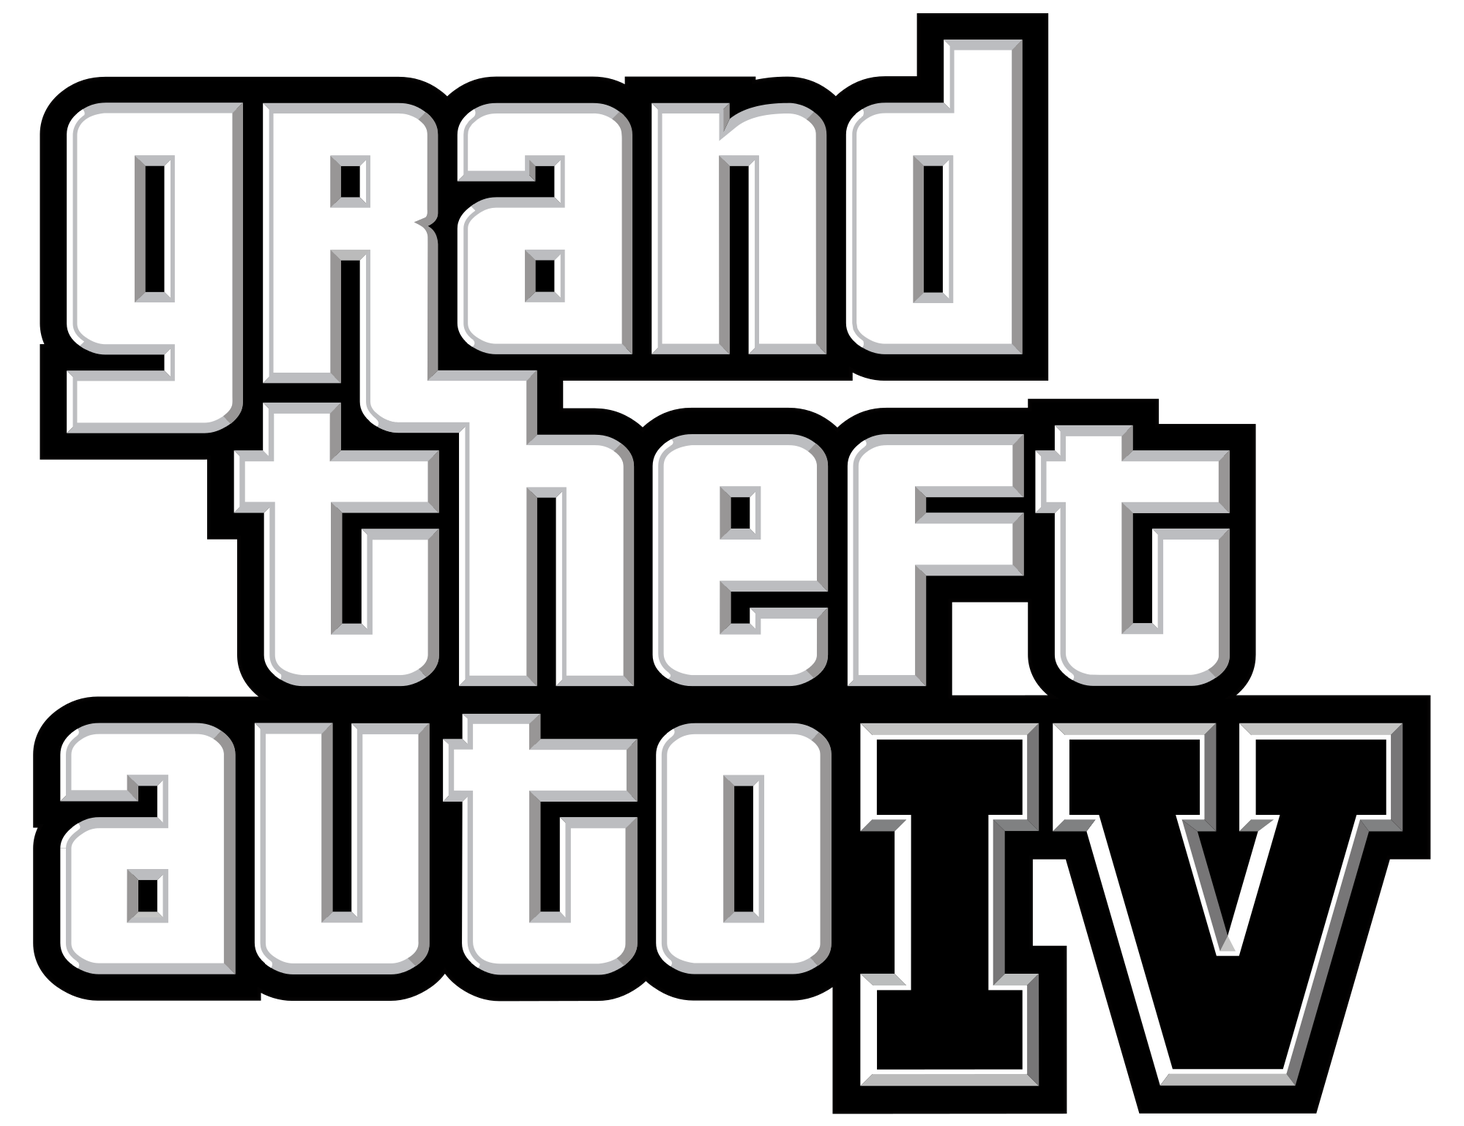 Grand Theft Auto iv (gta 4) / Xbox 360 em Promoção na Americanas